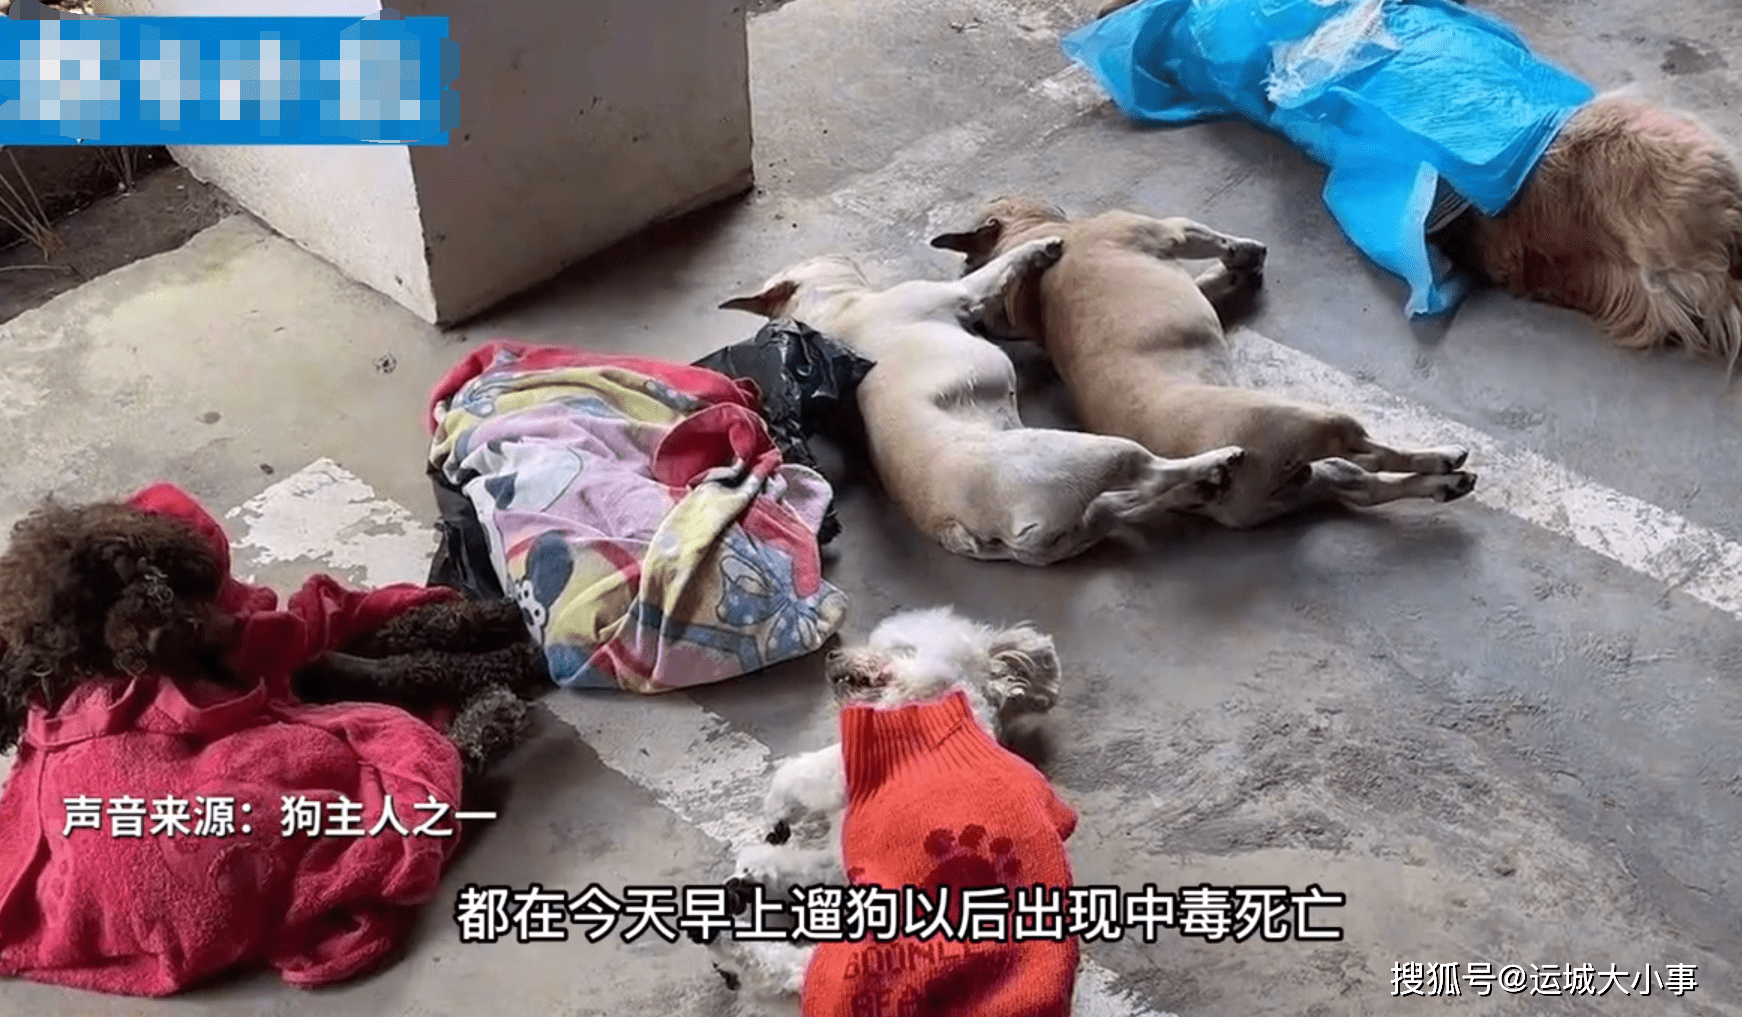 贵州一小区8条宠物狗被毒死主人怀抱尸体崩溃大哭网友评论亮了